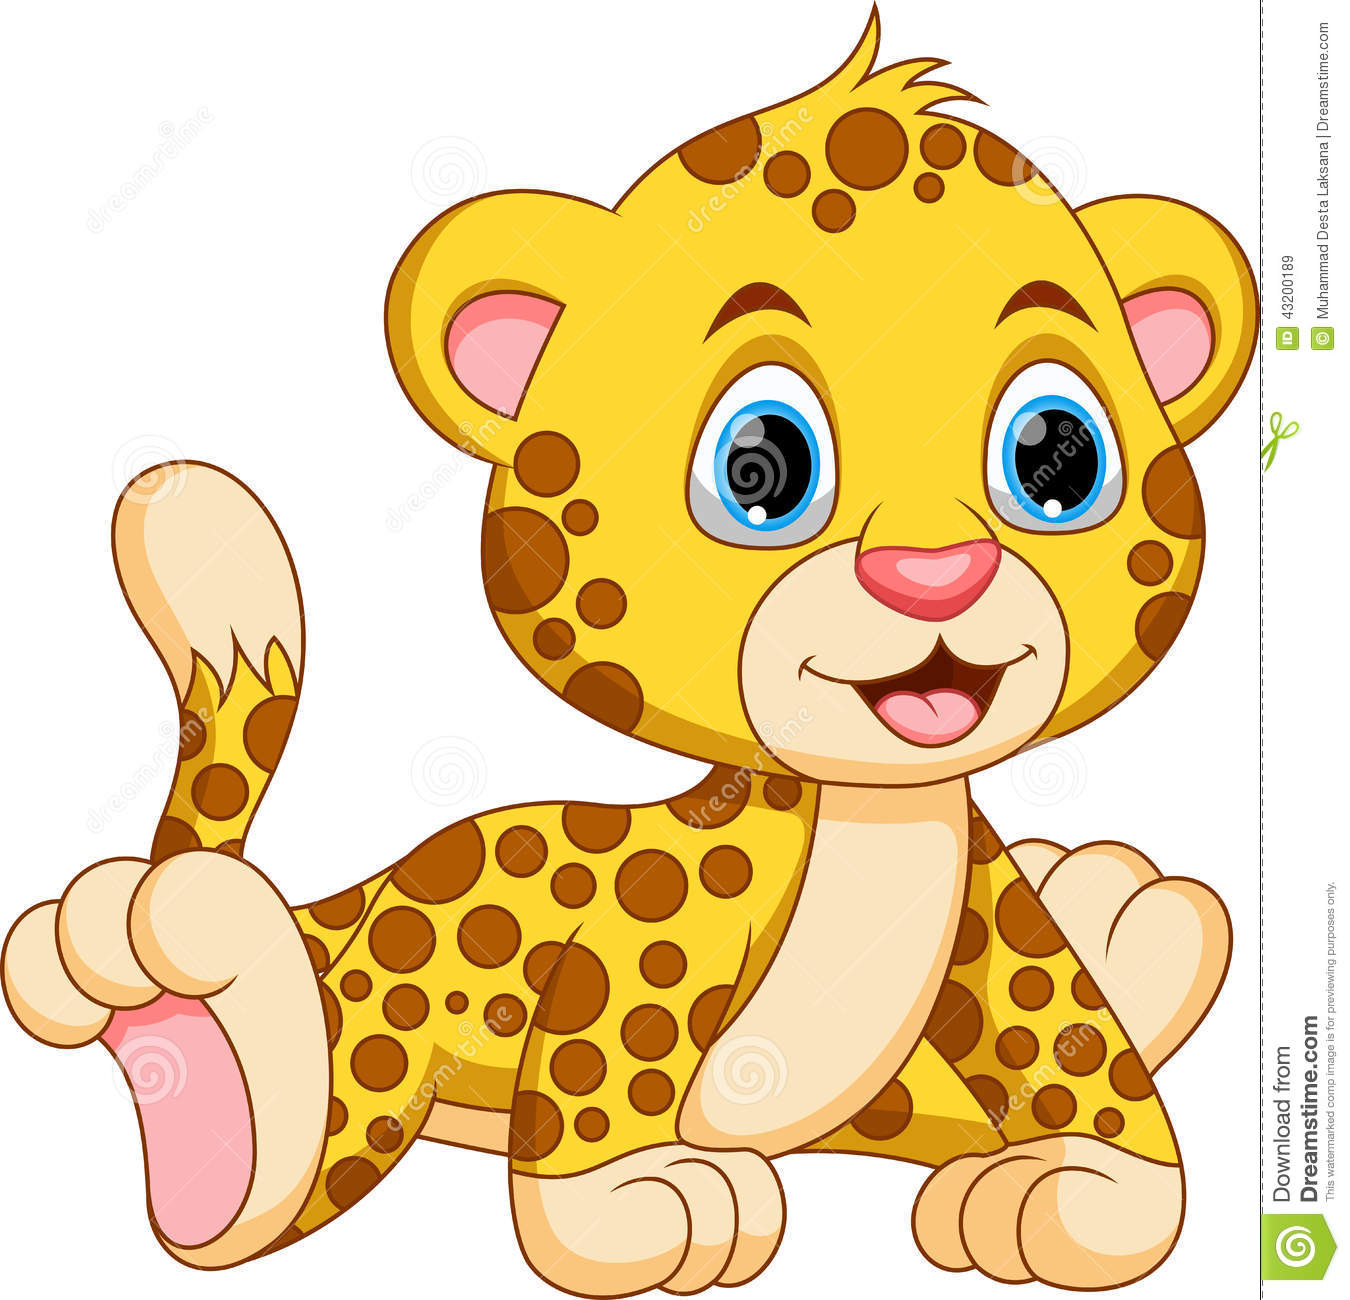 Baby Cheetah Drawing at GetDrawings | Free download